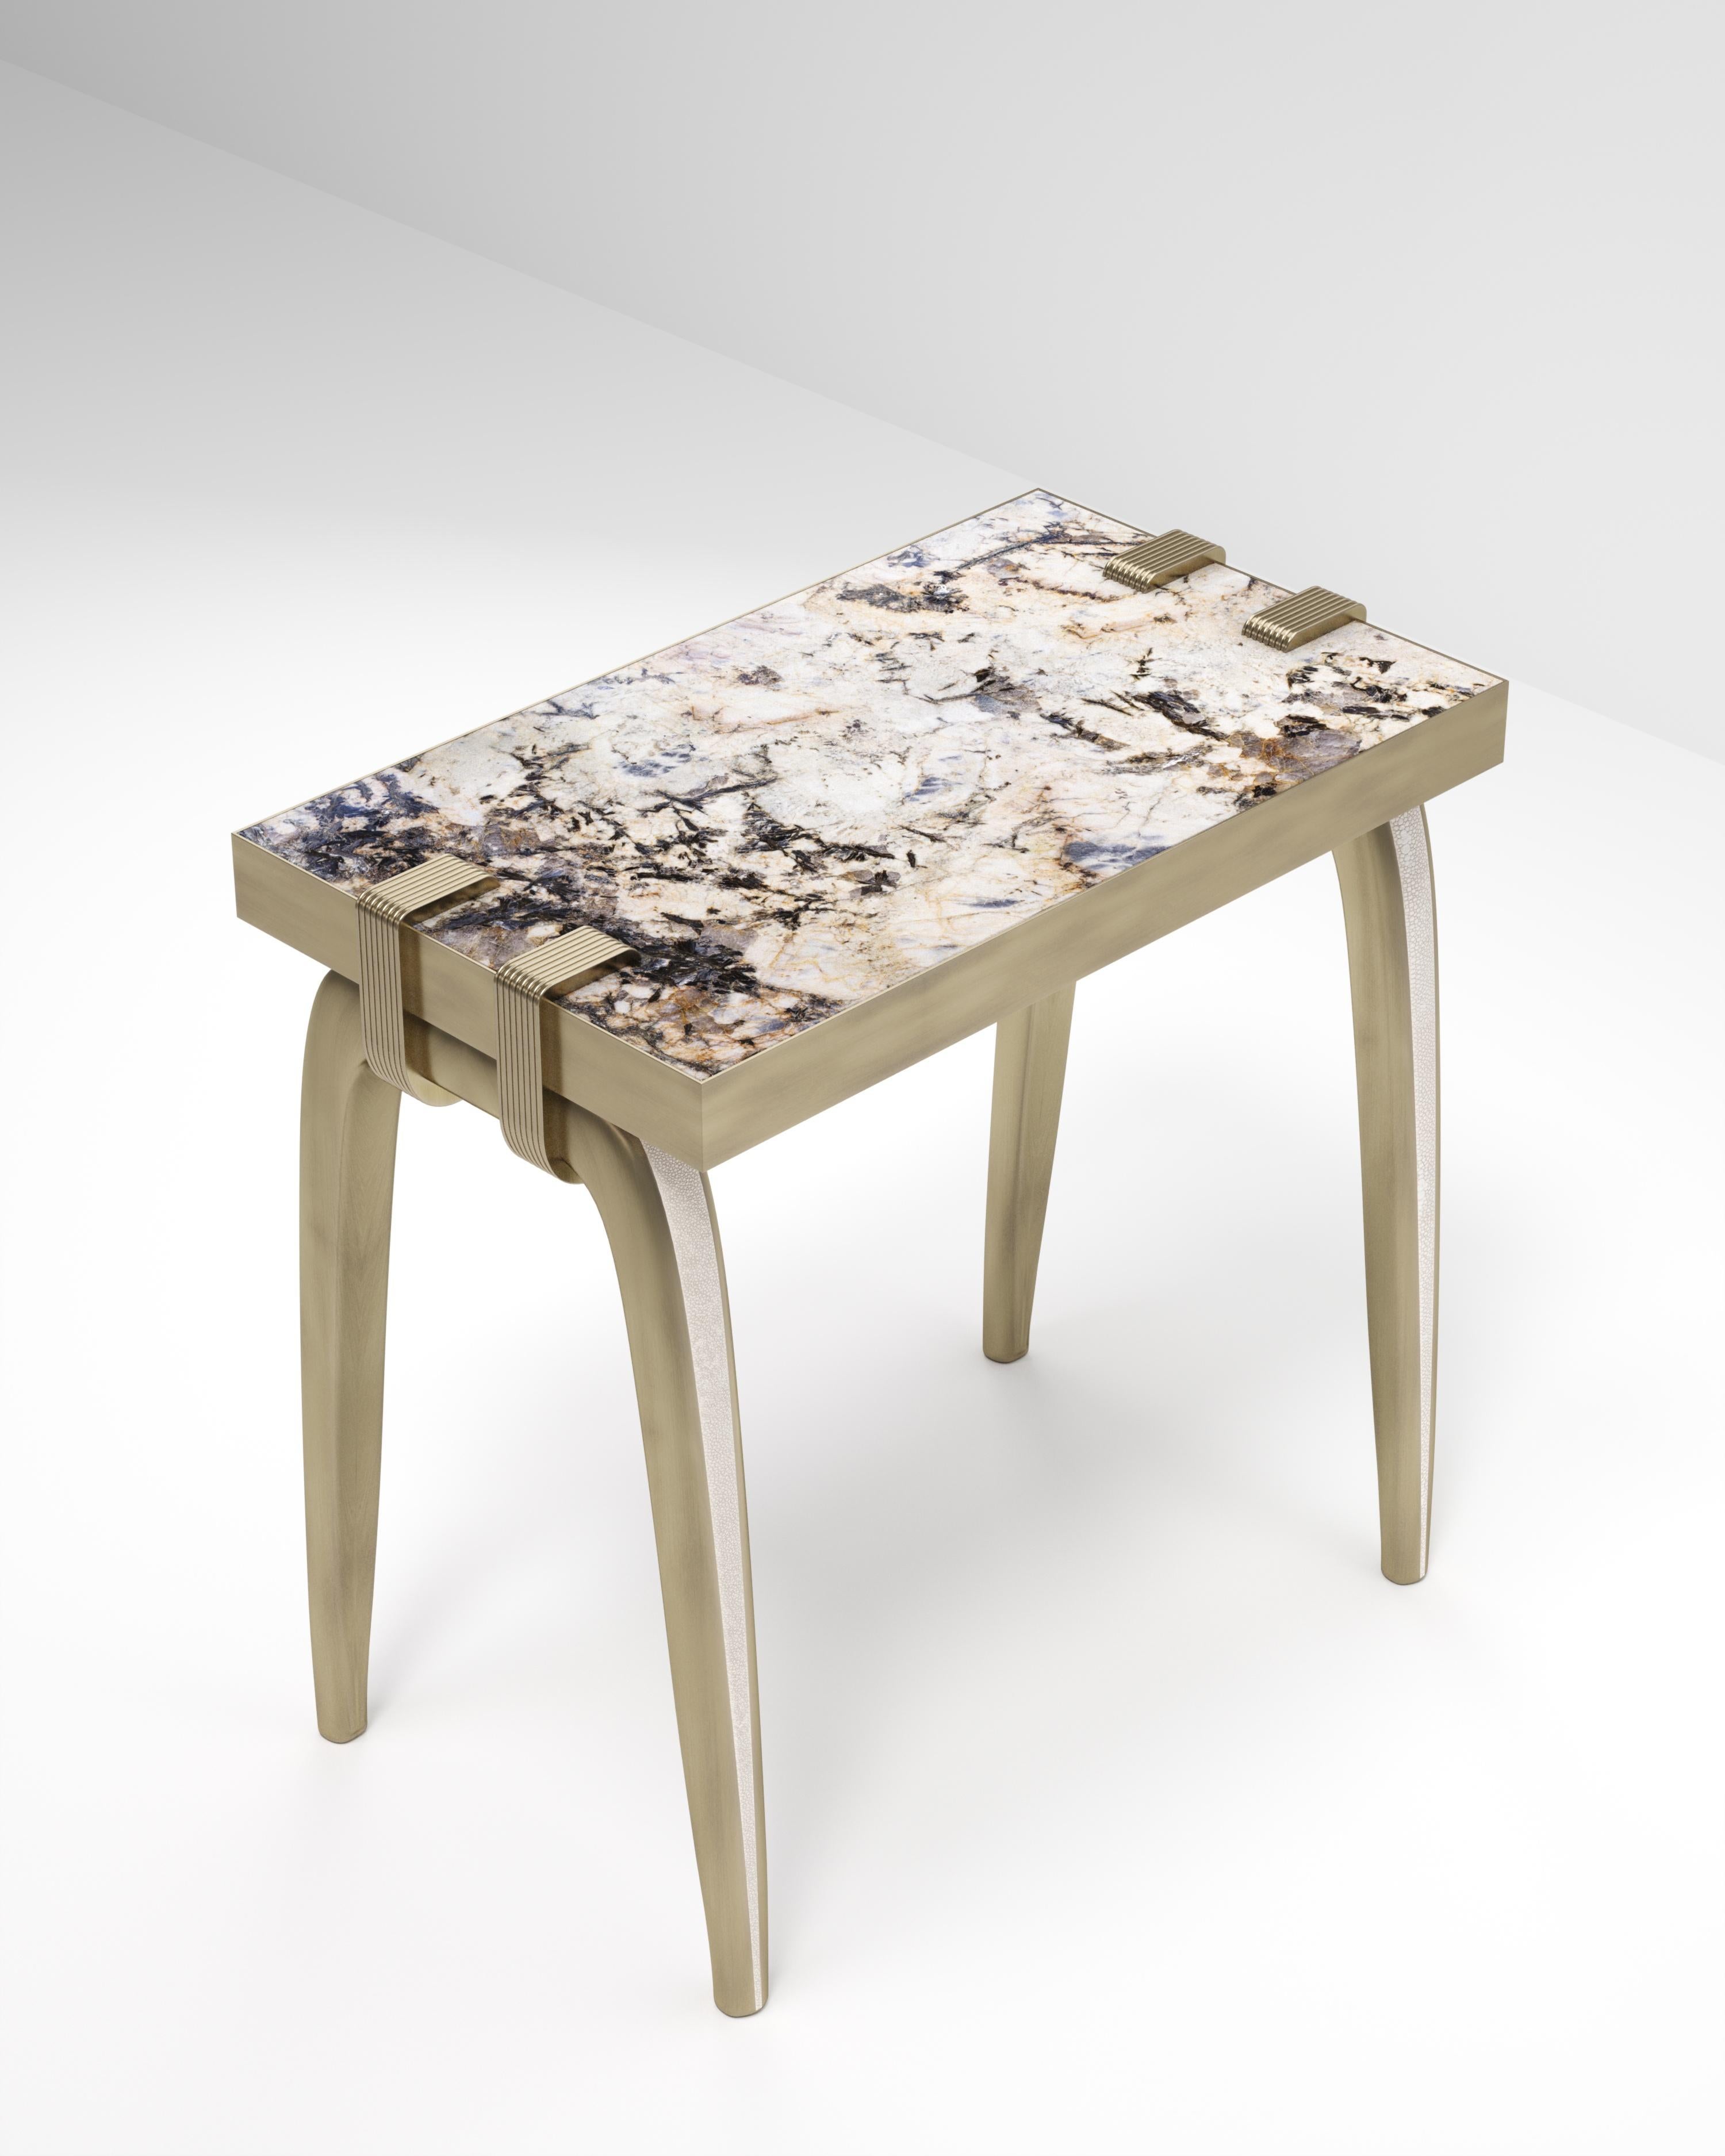 La table d'appoint Sonia est un modèle emblématique d'Augousti, qui met en valeur le savoir-faire exquis de la marque. Les pieds incrustés de galuchat s'accrochent sur le côté du plateau rectangulaire en quartz. Cette pièce est un clin d'œil à la